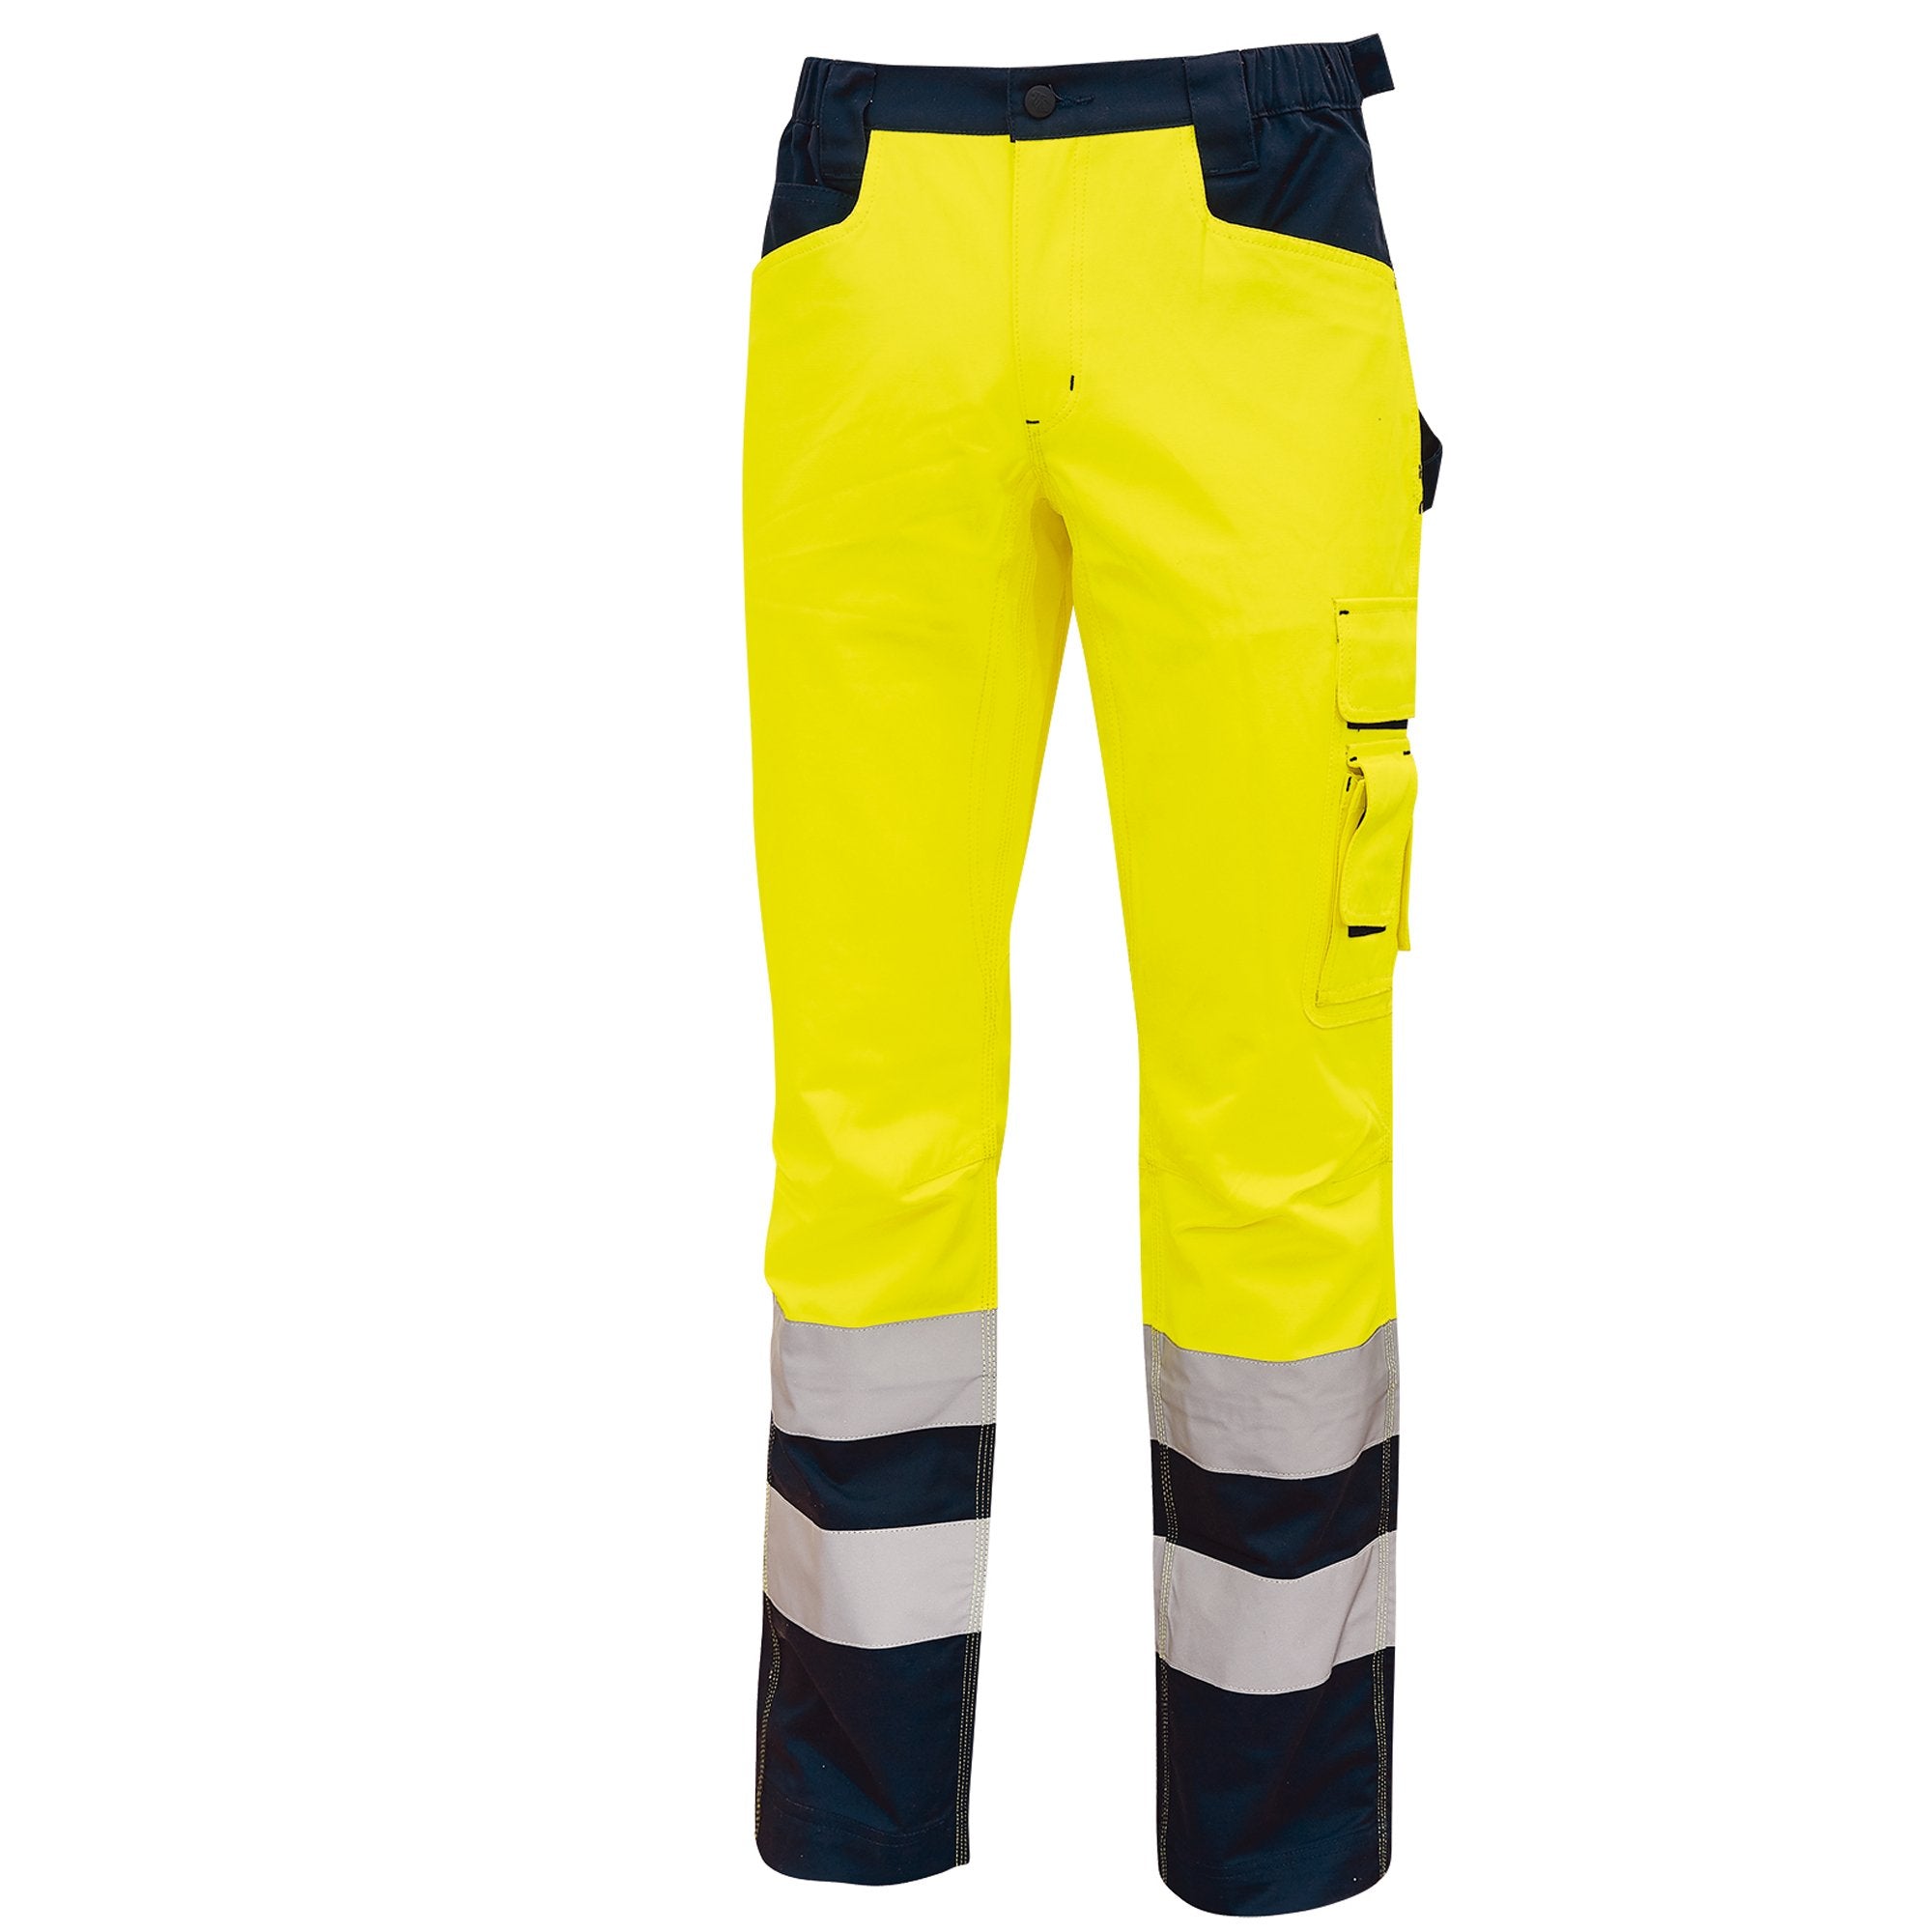 u-power-pantalone-invernale-alta-visibilita-beacon-giallo-fluo-taglia-l